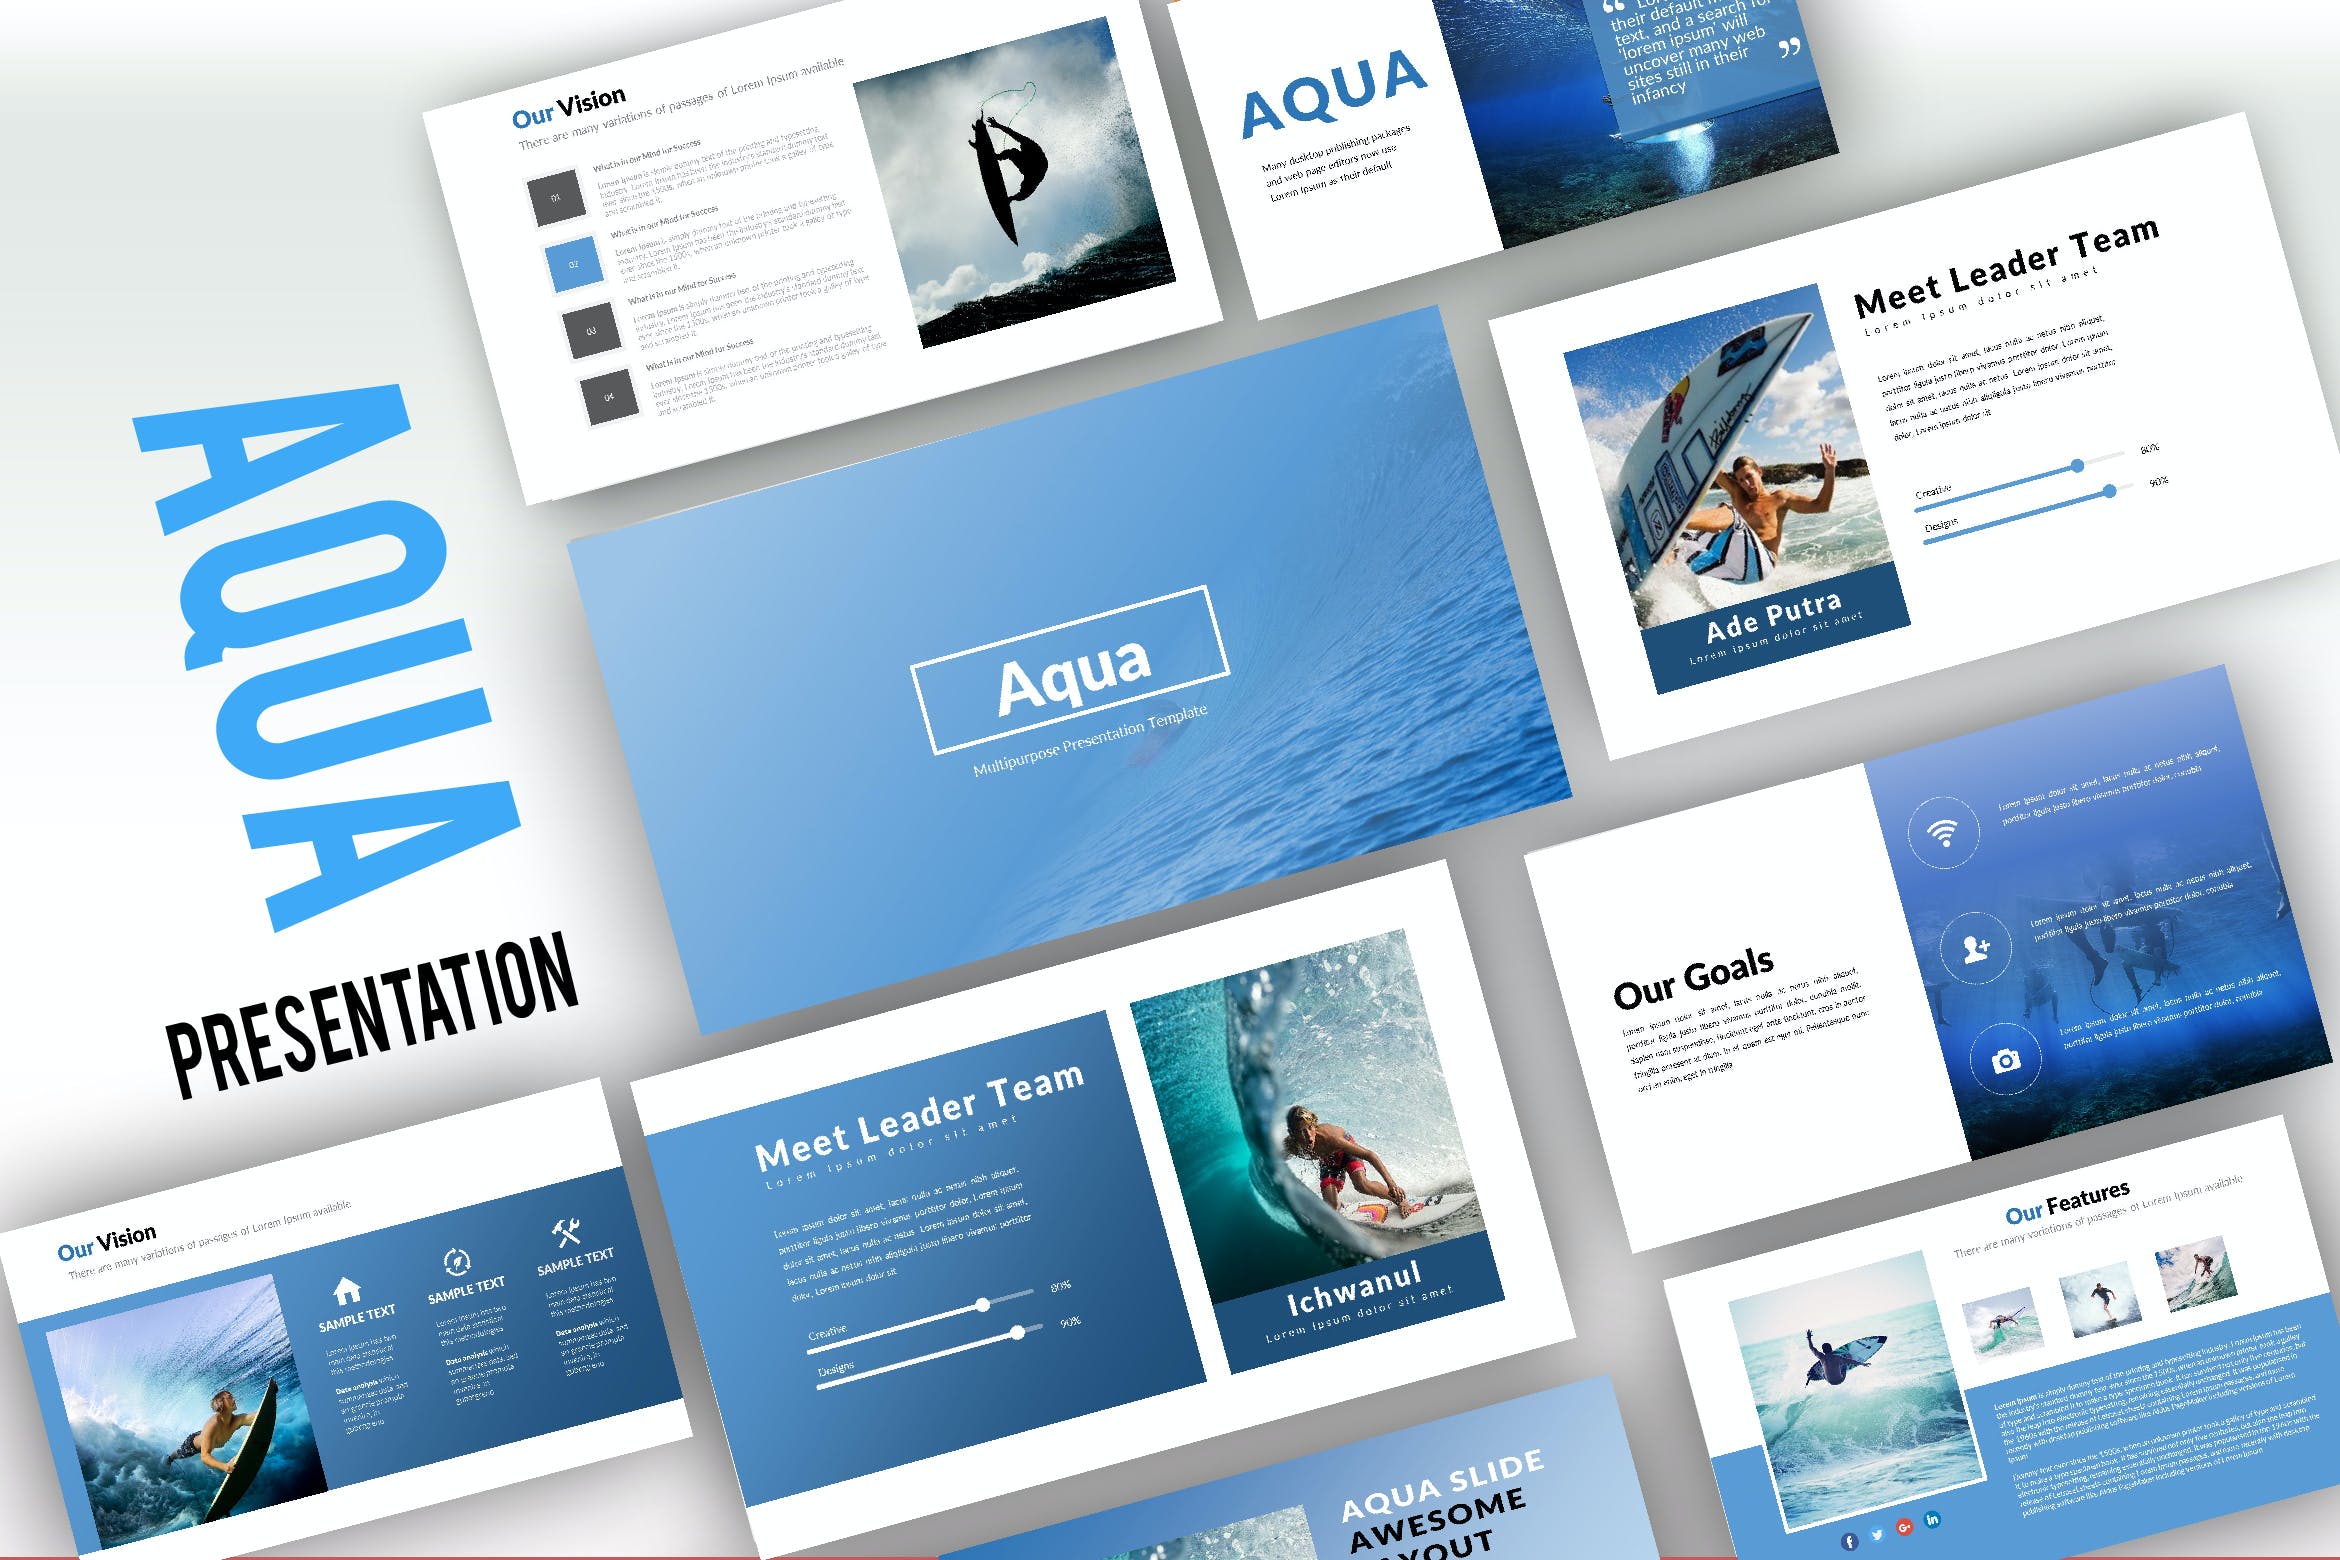 极限运动冲浪主题演示PPT模板 Aqua Creative Powerpoint设计素材模板